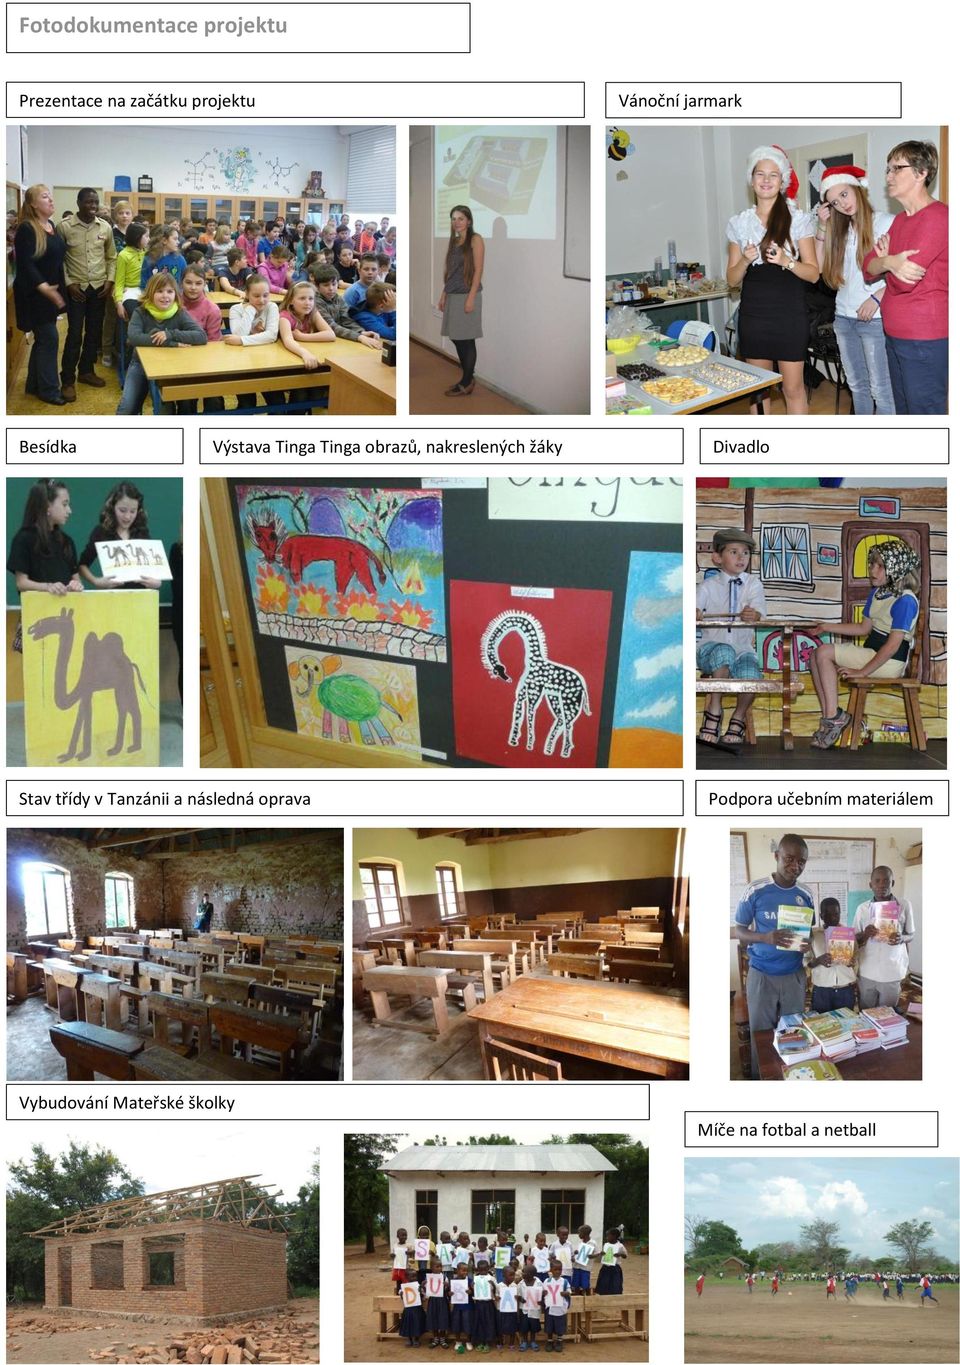 nakreslených žáky Divadlo Stav třídy v Tanzánii a následná